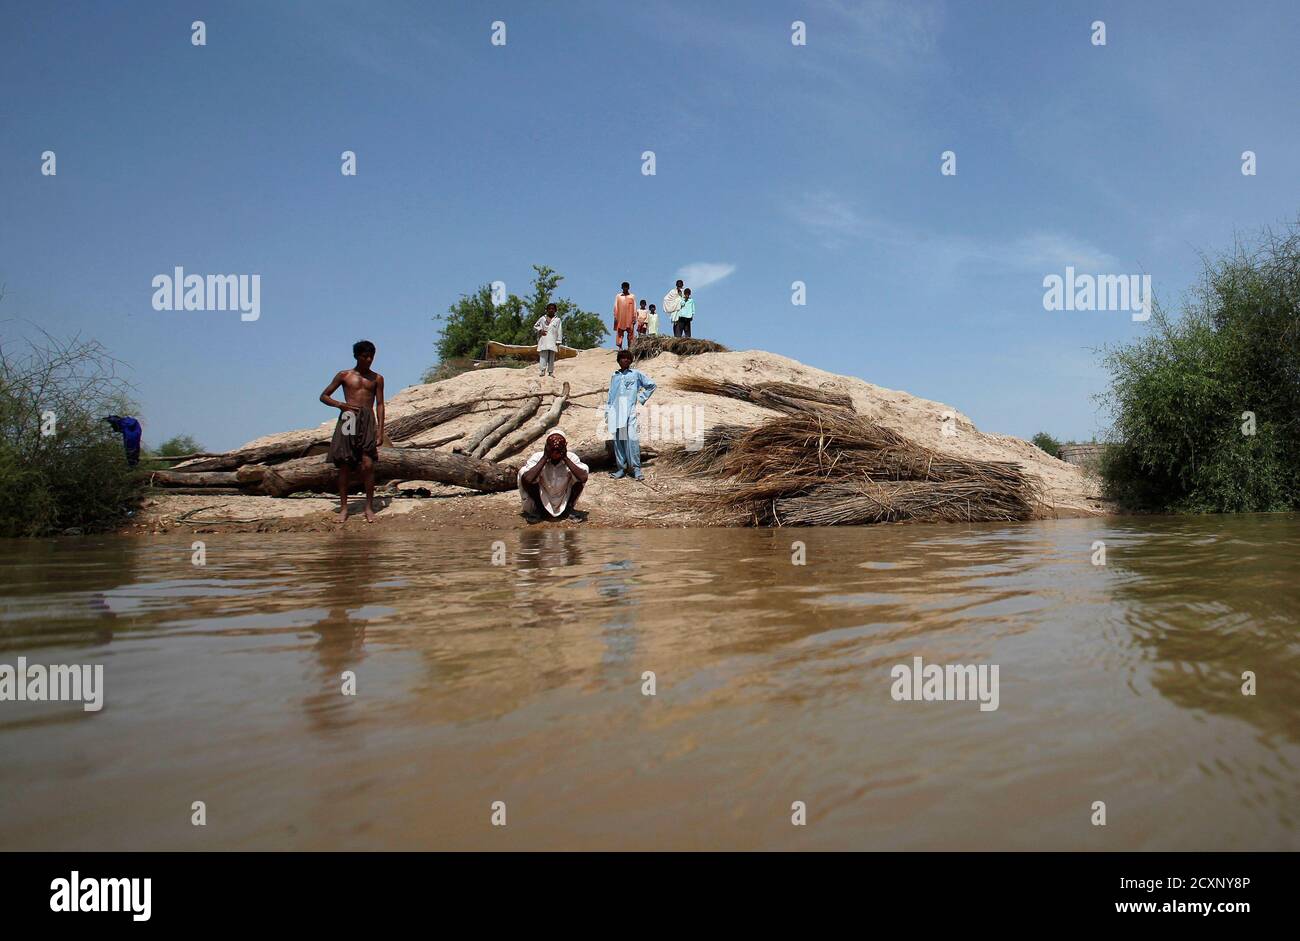 Achar, ein Opfer der Flut, führt Waschung vor dem Gebet während der Einnahme Zuflucht auf einem Hügel mit anderen in Amri Dorf, etwa 280 km (174 Meilen) von Karatschi auf 19. August 2010. Mehr als 4 Millionen Pakistaner von fast drei Wochen von Überschwemmungen obdachlos vorgenommen wurden, sagte der Vereinten Nationen am Donnerstag, die kritische Aufgabe größere Mengen von dringender Hilfe zu sichern. REUTERS/Akhtar Soomro (PAKISTAN - Tags: DISASTER-Umgebung) Stockfoto